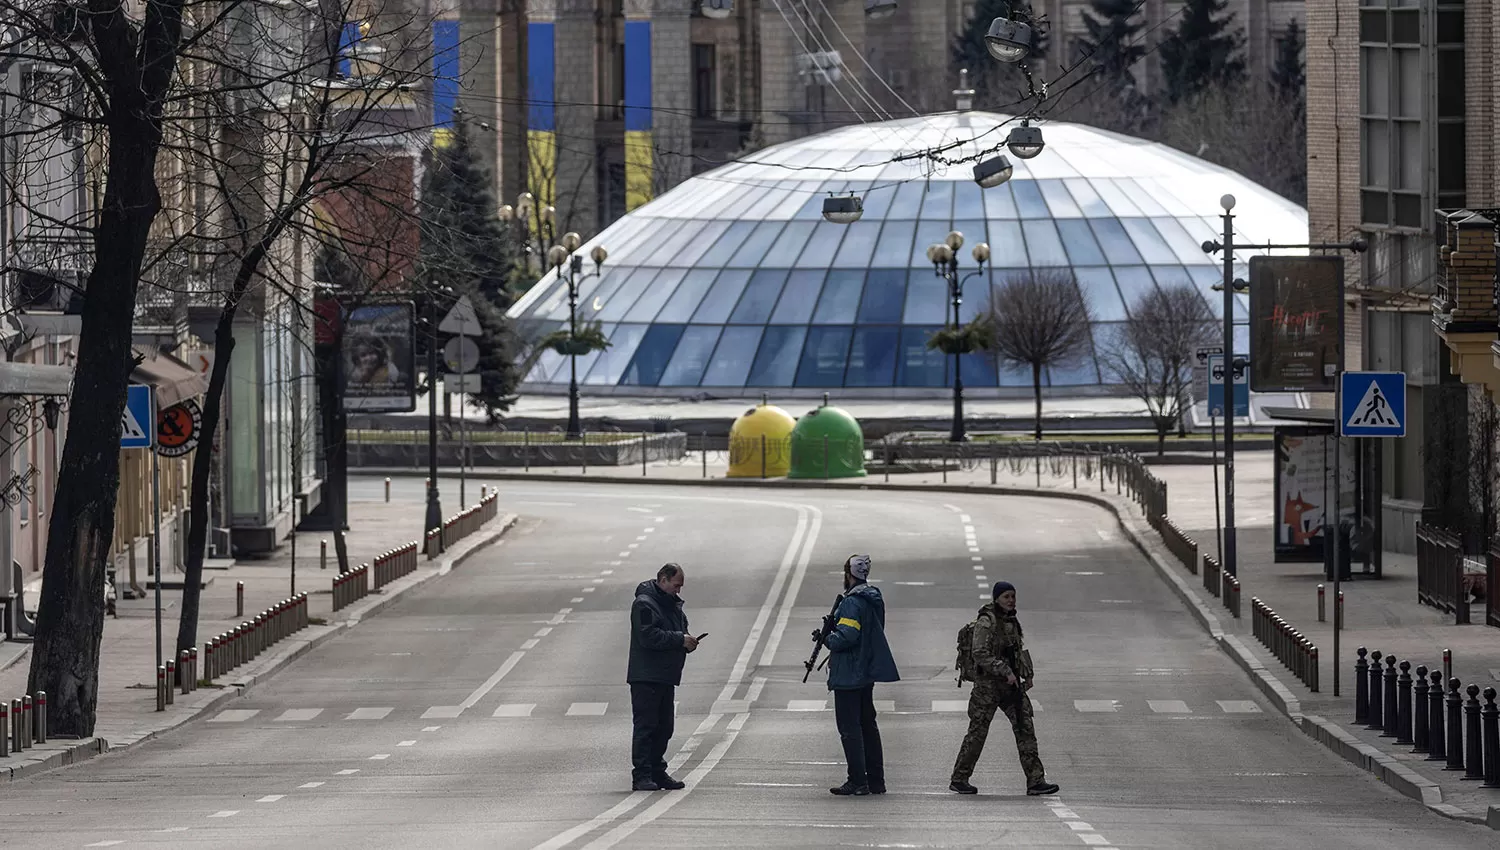 CALLES DESIERTAS. Militares vigilan el perímetro de la plaza principal de Kiev.